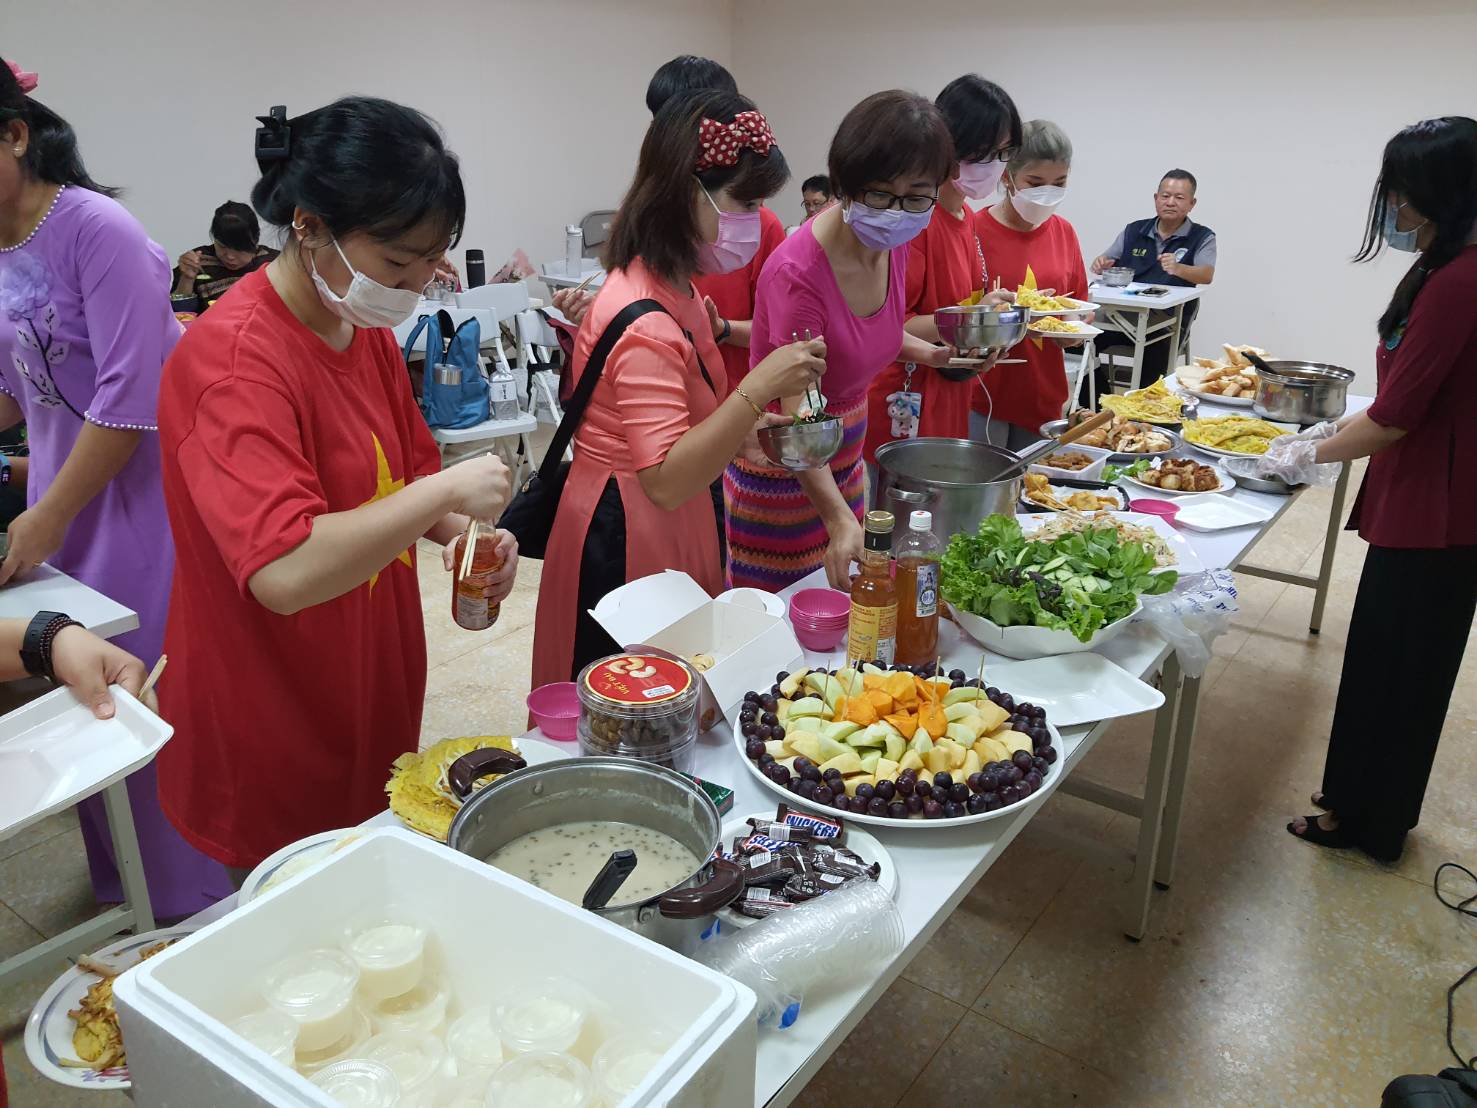 Ngoài ra còn có hoạt động tự làm bánh ngọt của Việt Nam và chia sẻ với các thành viên trong gia đình, như là một cách để cùng nhau chúc mừng ngày Phụ nữ Việt Nam.